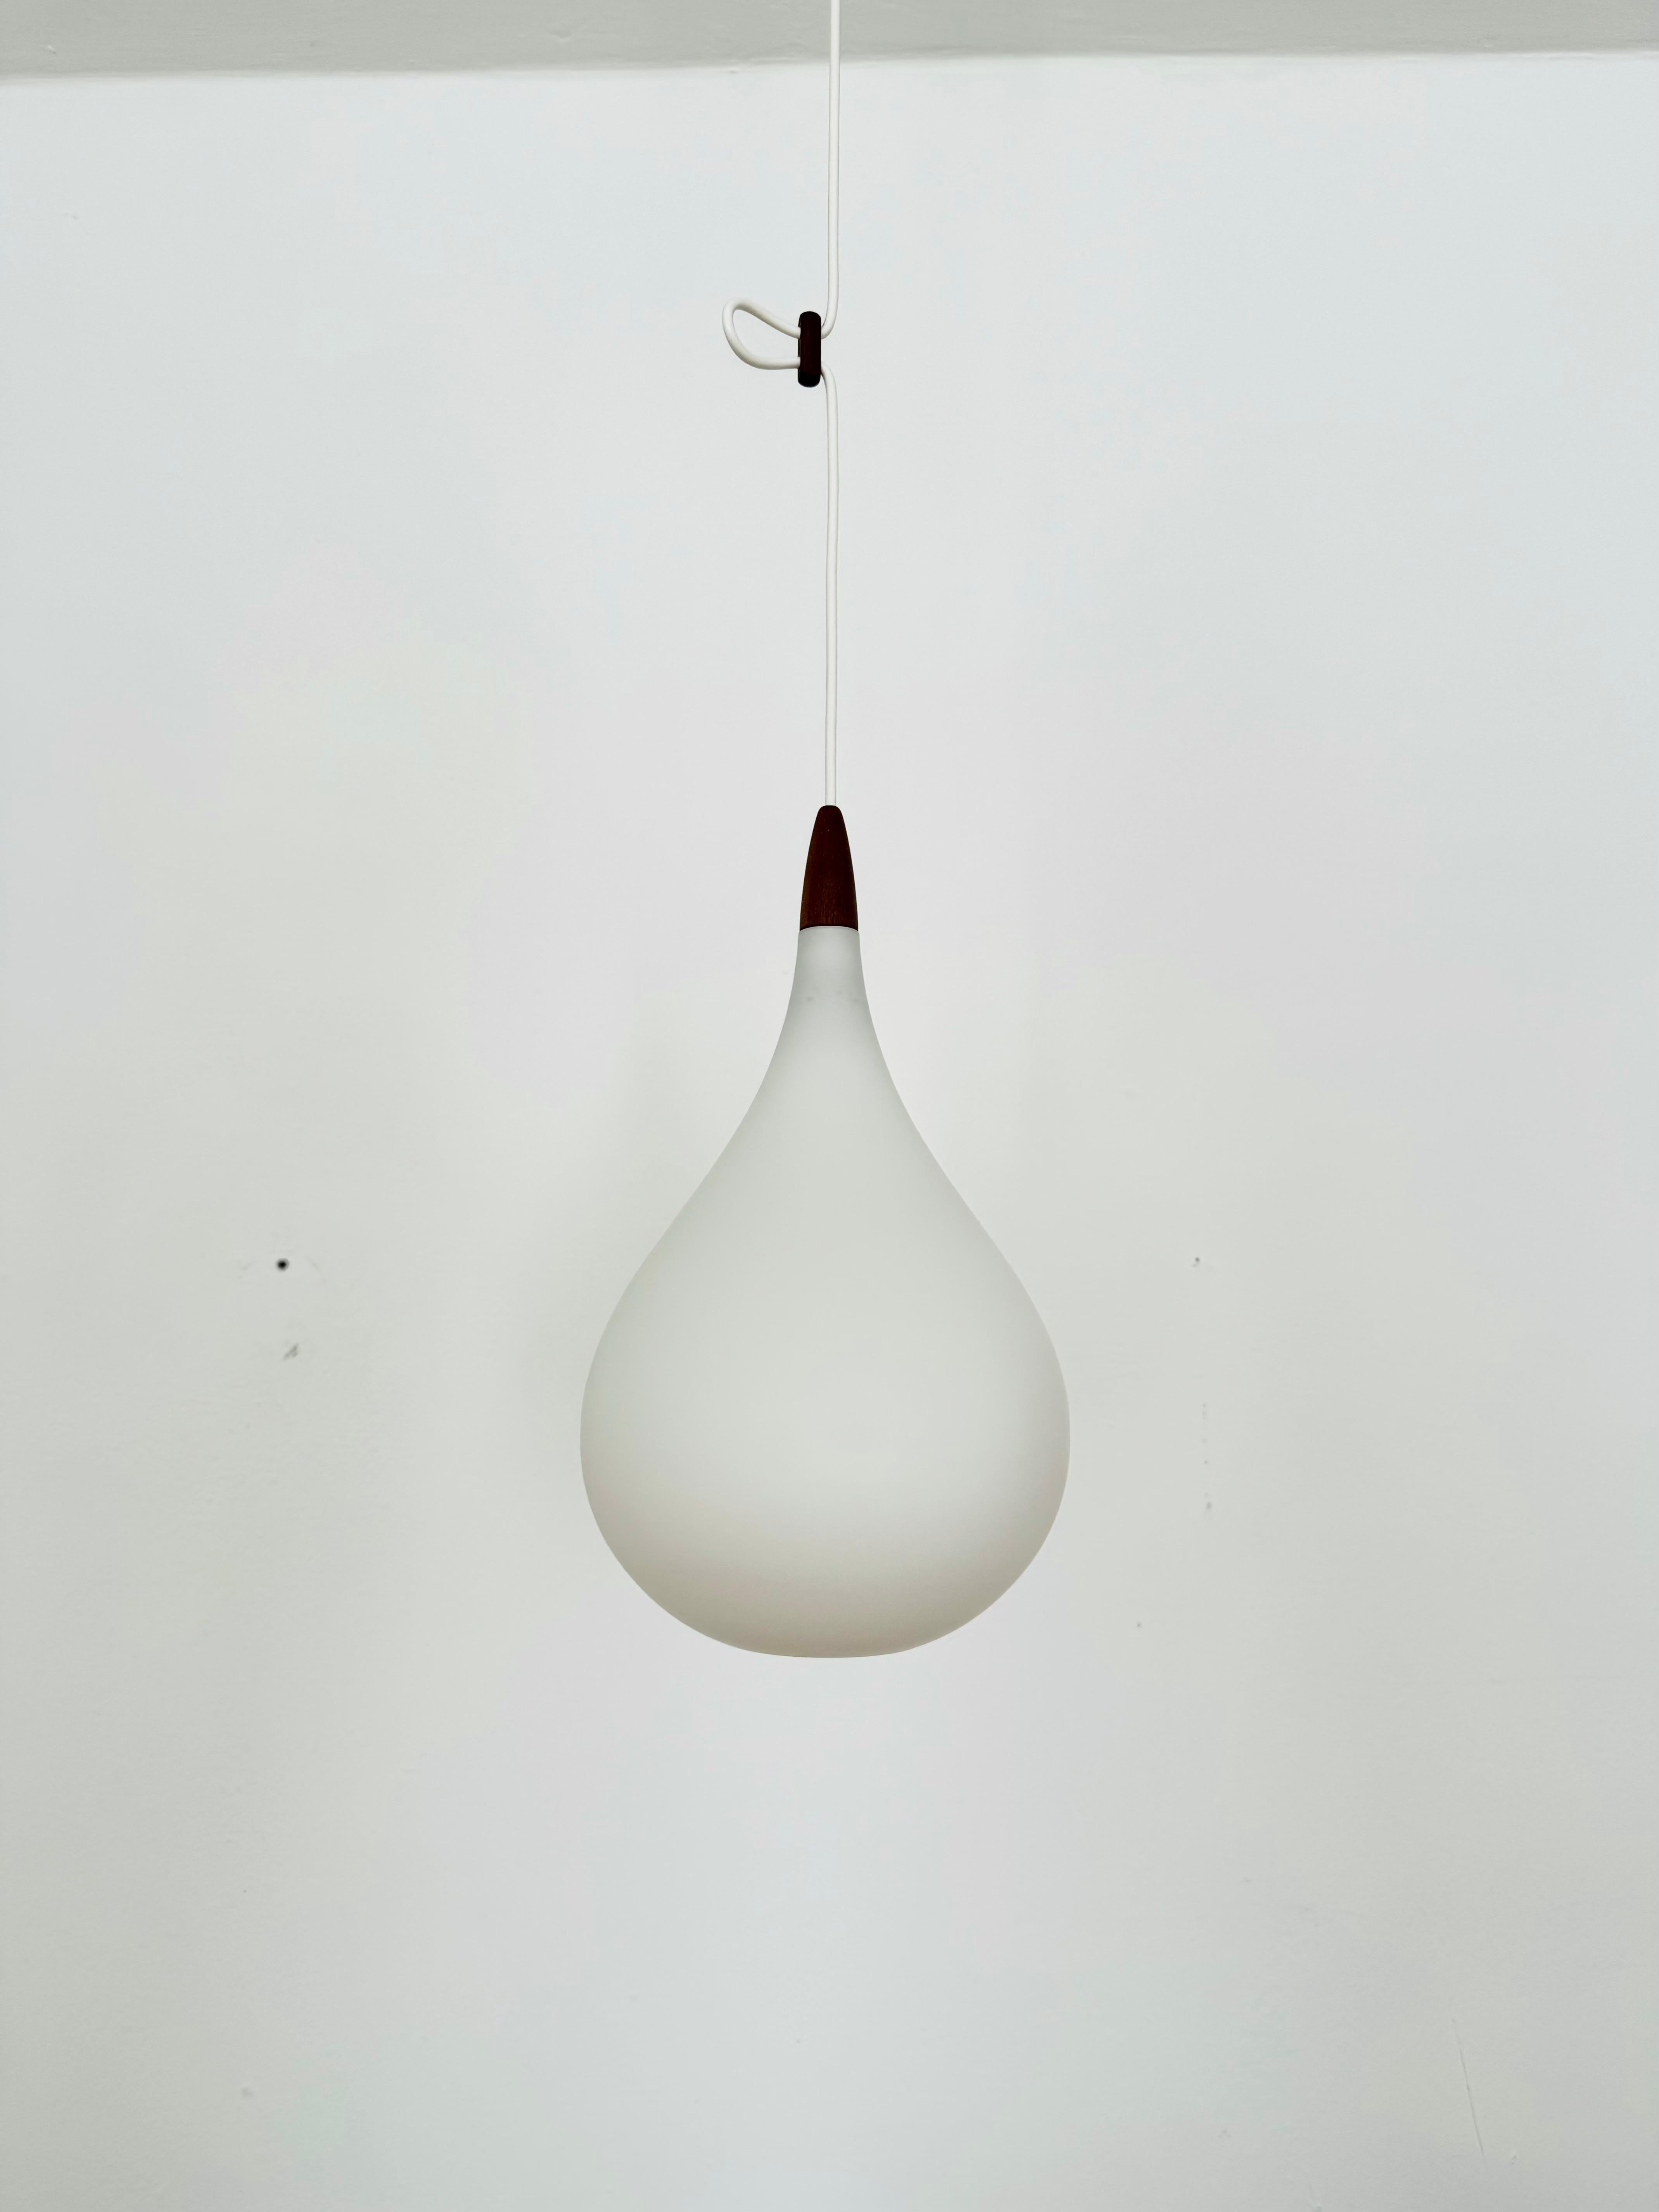 Merveilleuses lampes suspendues suédoises en verre opale des années 1960.
Design/One exceptionnellement minimaliste et d'une fantastique élégance.
Très beaux détails en teck.

Fabricant : Luxus
Design/One : Uno et Östen Kristiansson
Vers